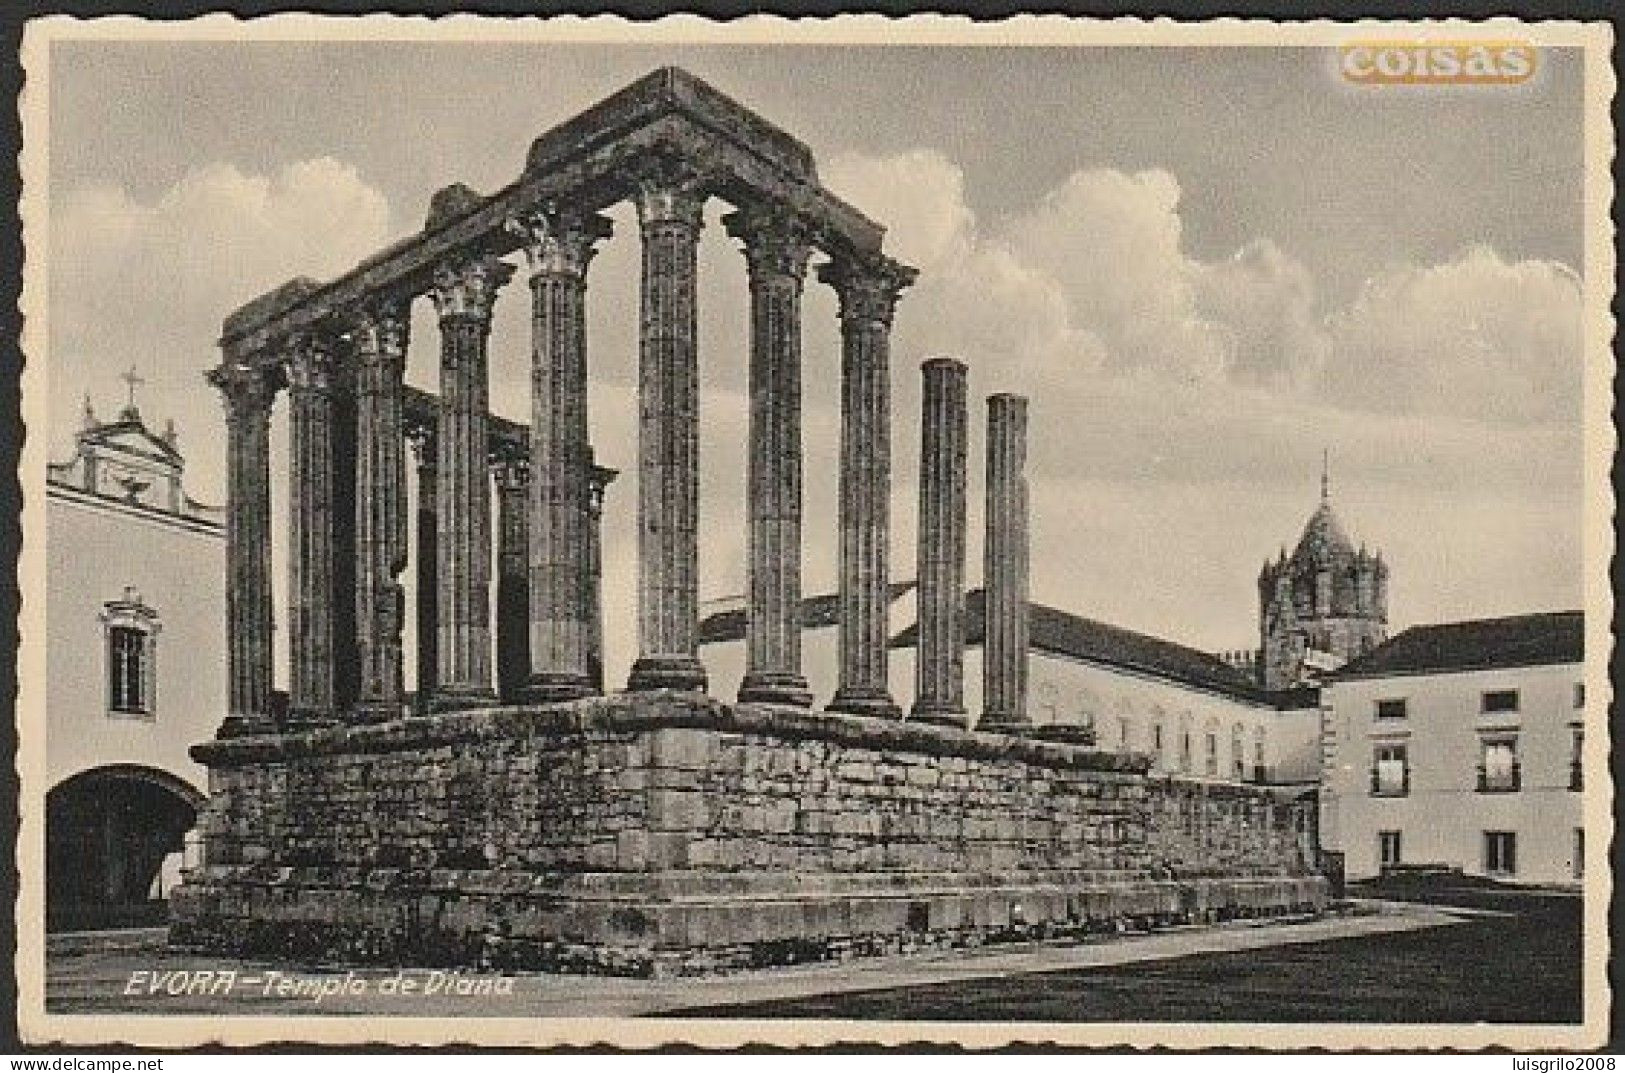 Évora - Templo De Diana -|- Cliché Ed. Nogueira - Evora